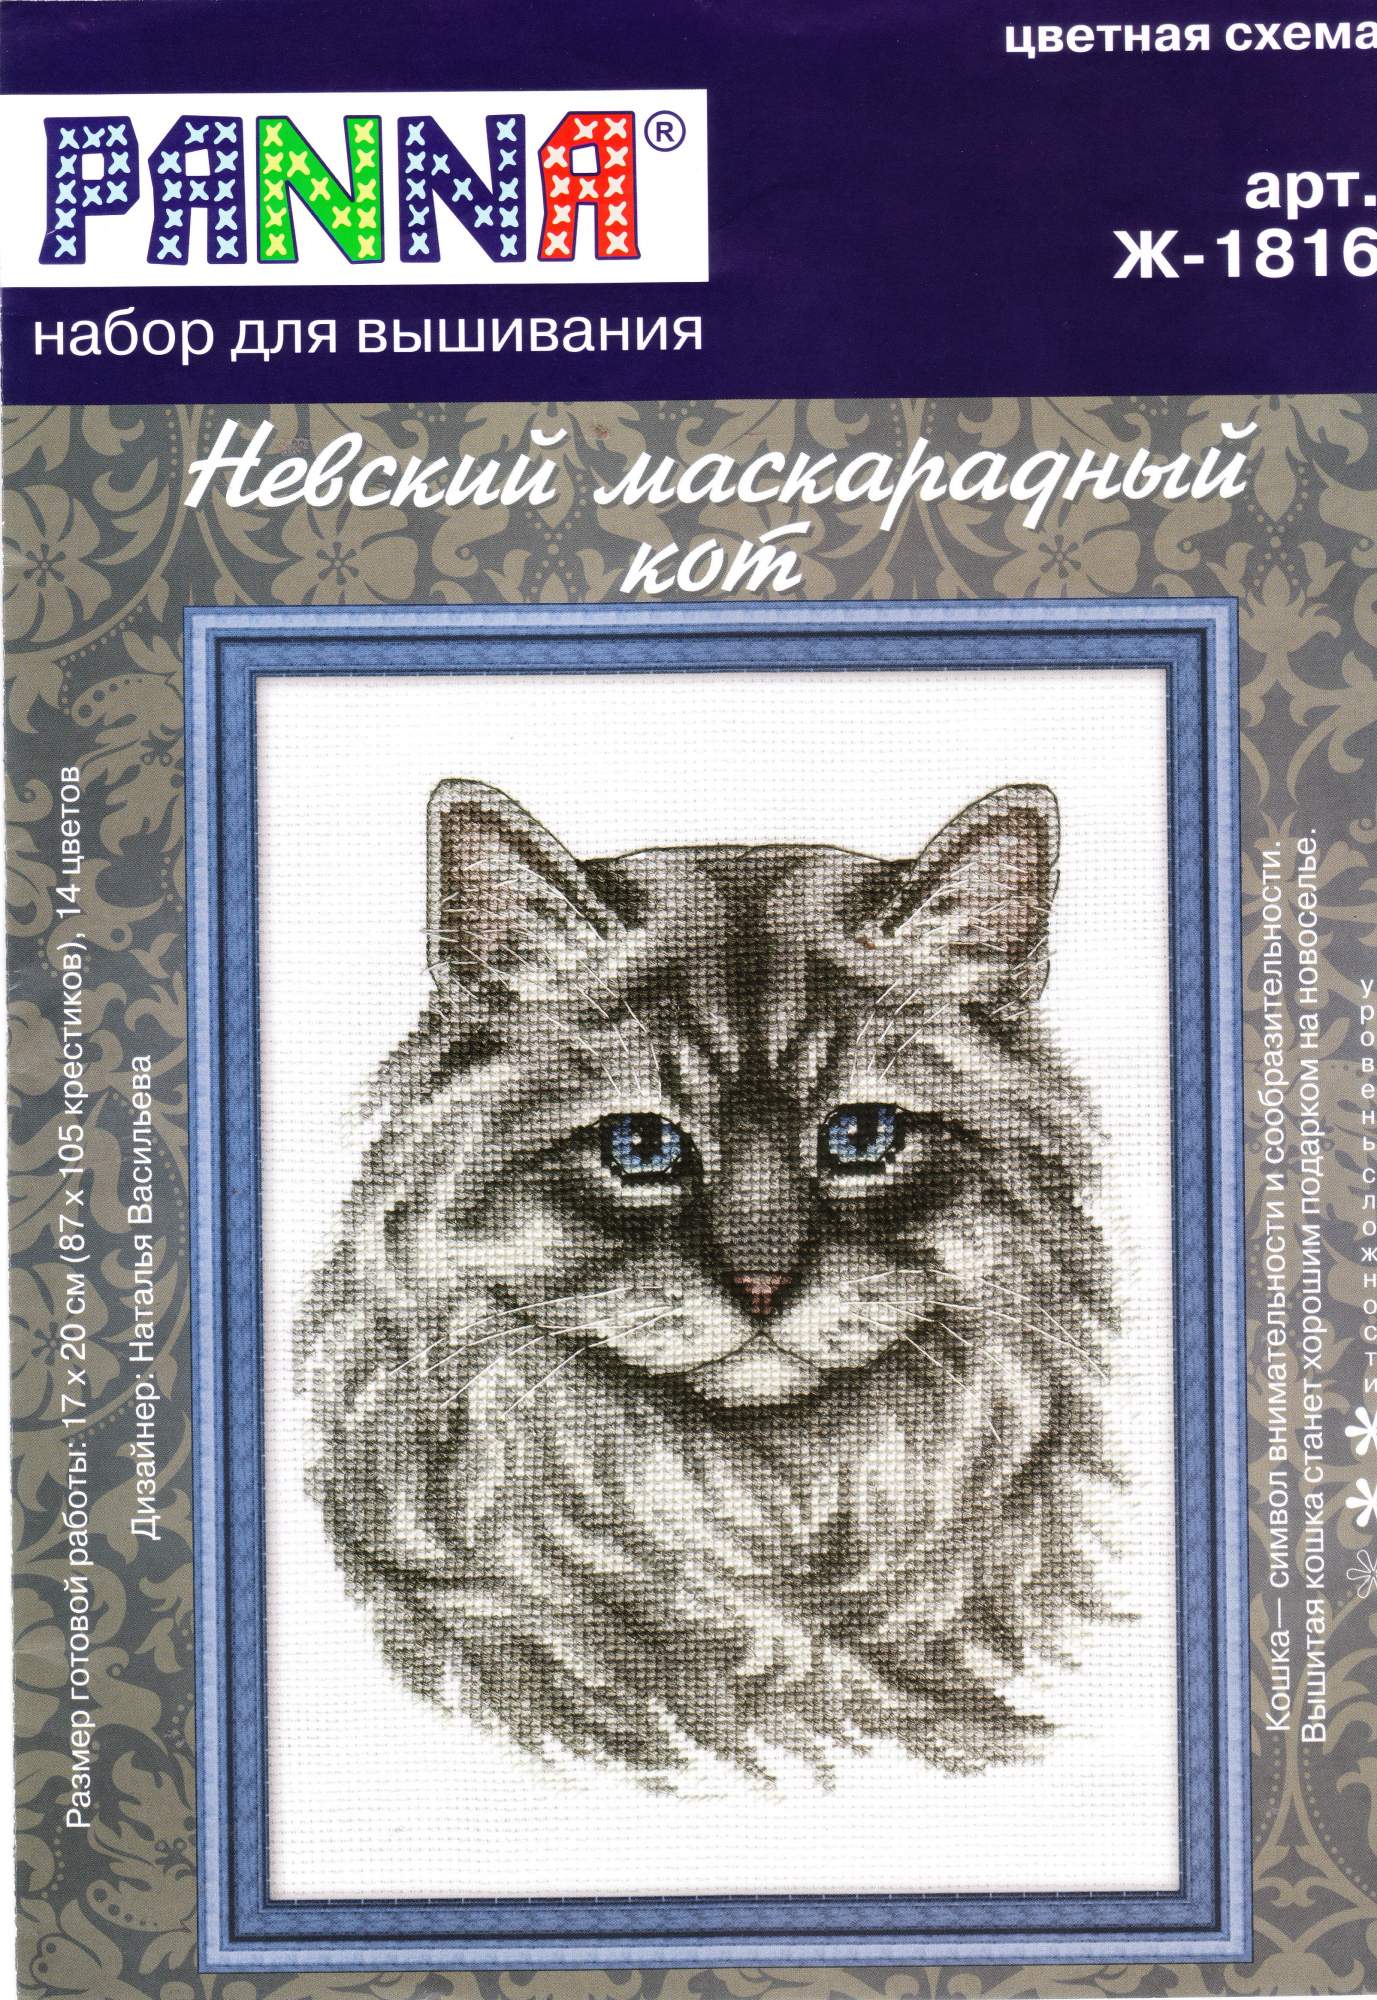 Набор вышивки крестом Panna "Невский маскарадный кот", 17х20 см, арт. J-1816